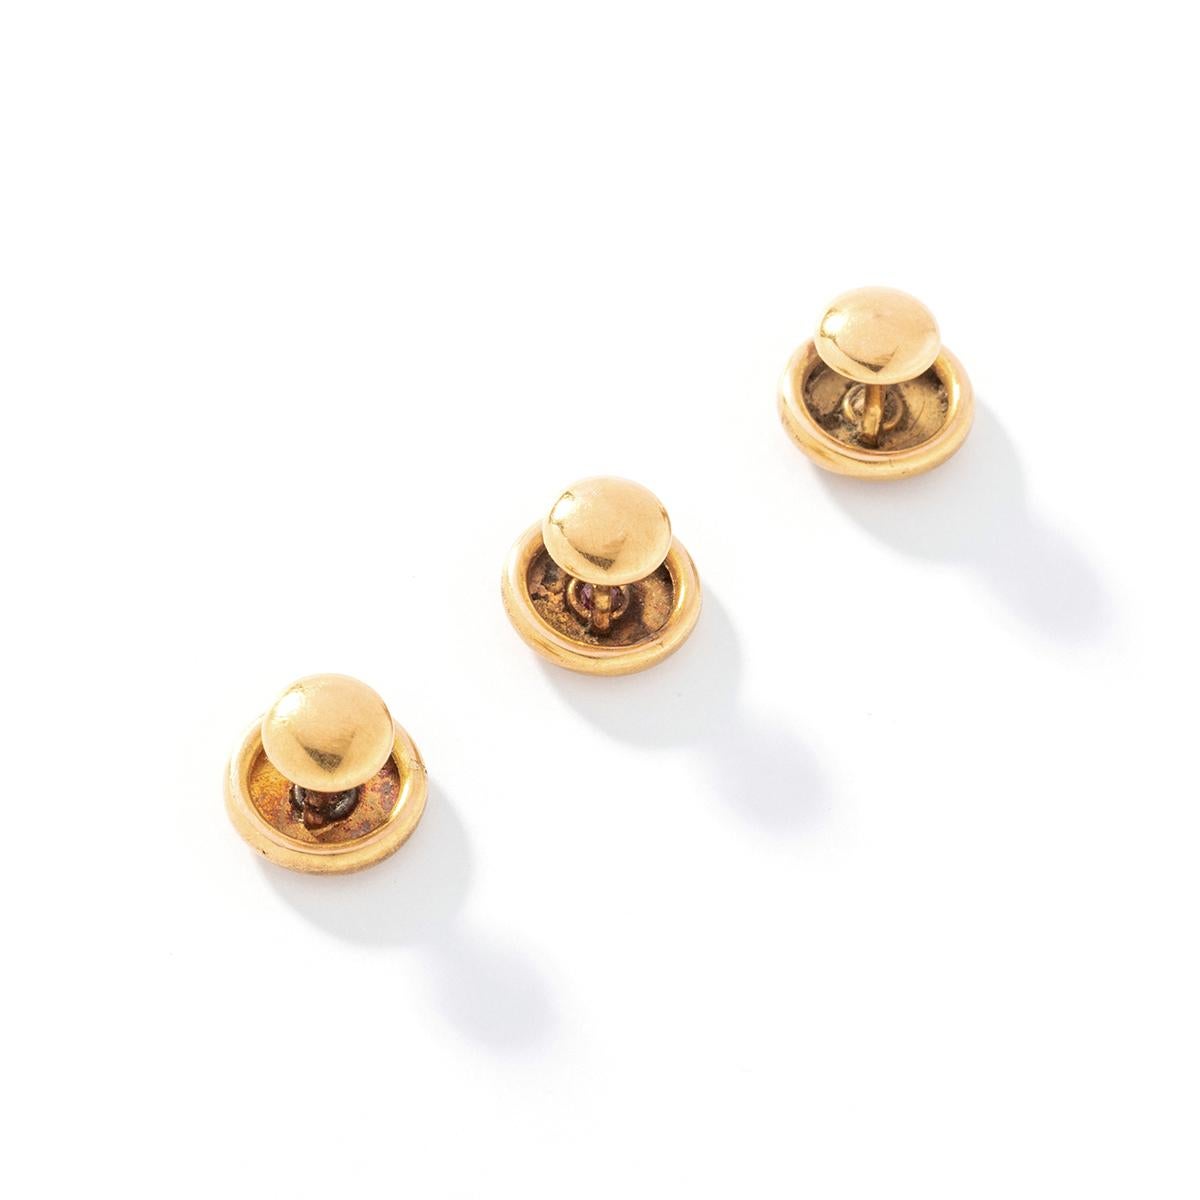 Le set de boutons de manchette en or Rubis est une collection d'accessoires vraiment exquise et noble.

Ce set européen comprend une paire de boutons de manchette et trois clous d'oreilles, tous réalisés en or jaune 18k 750. Chaque pièce est ornée